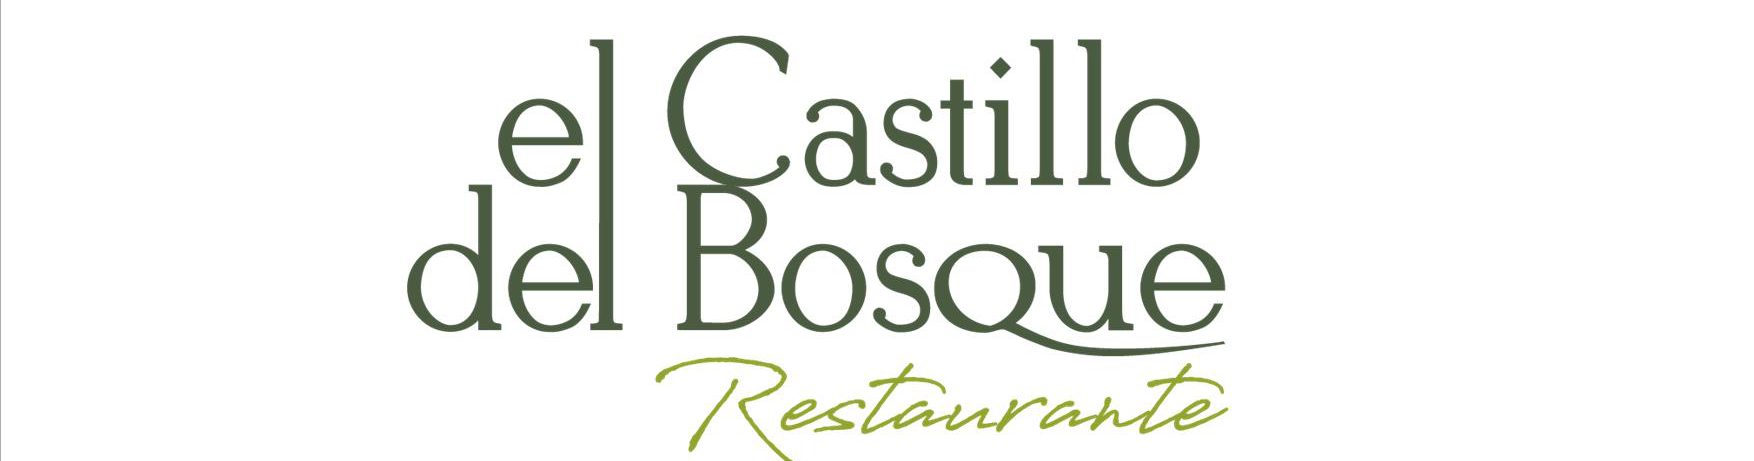 El Castillo Del Bosque Restaurante Ctra Felanitx Porto Colom Km8 Mallorca 971 82 41 44